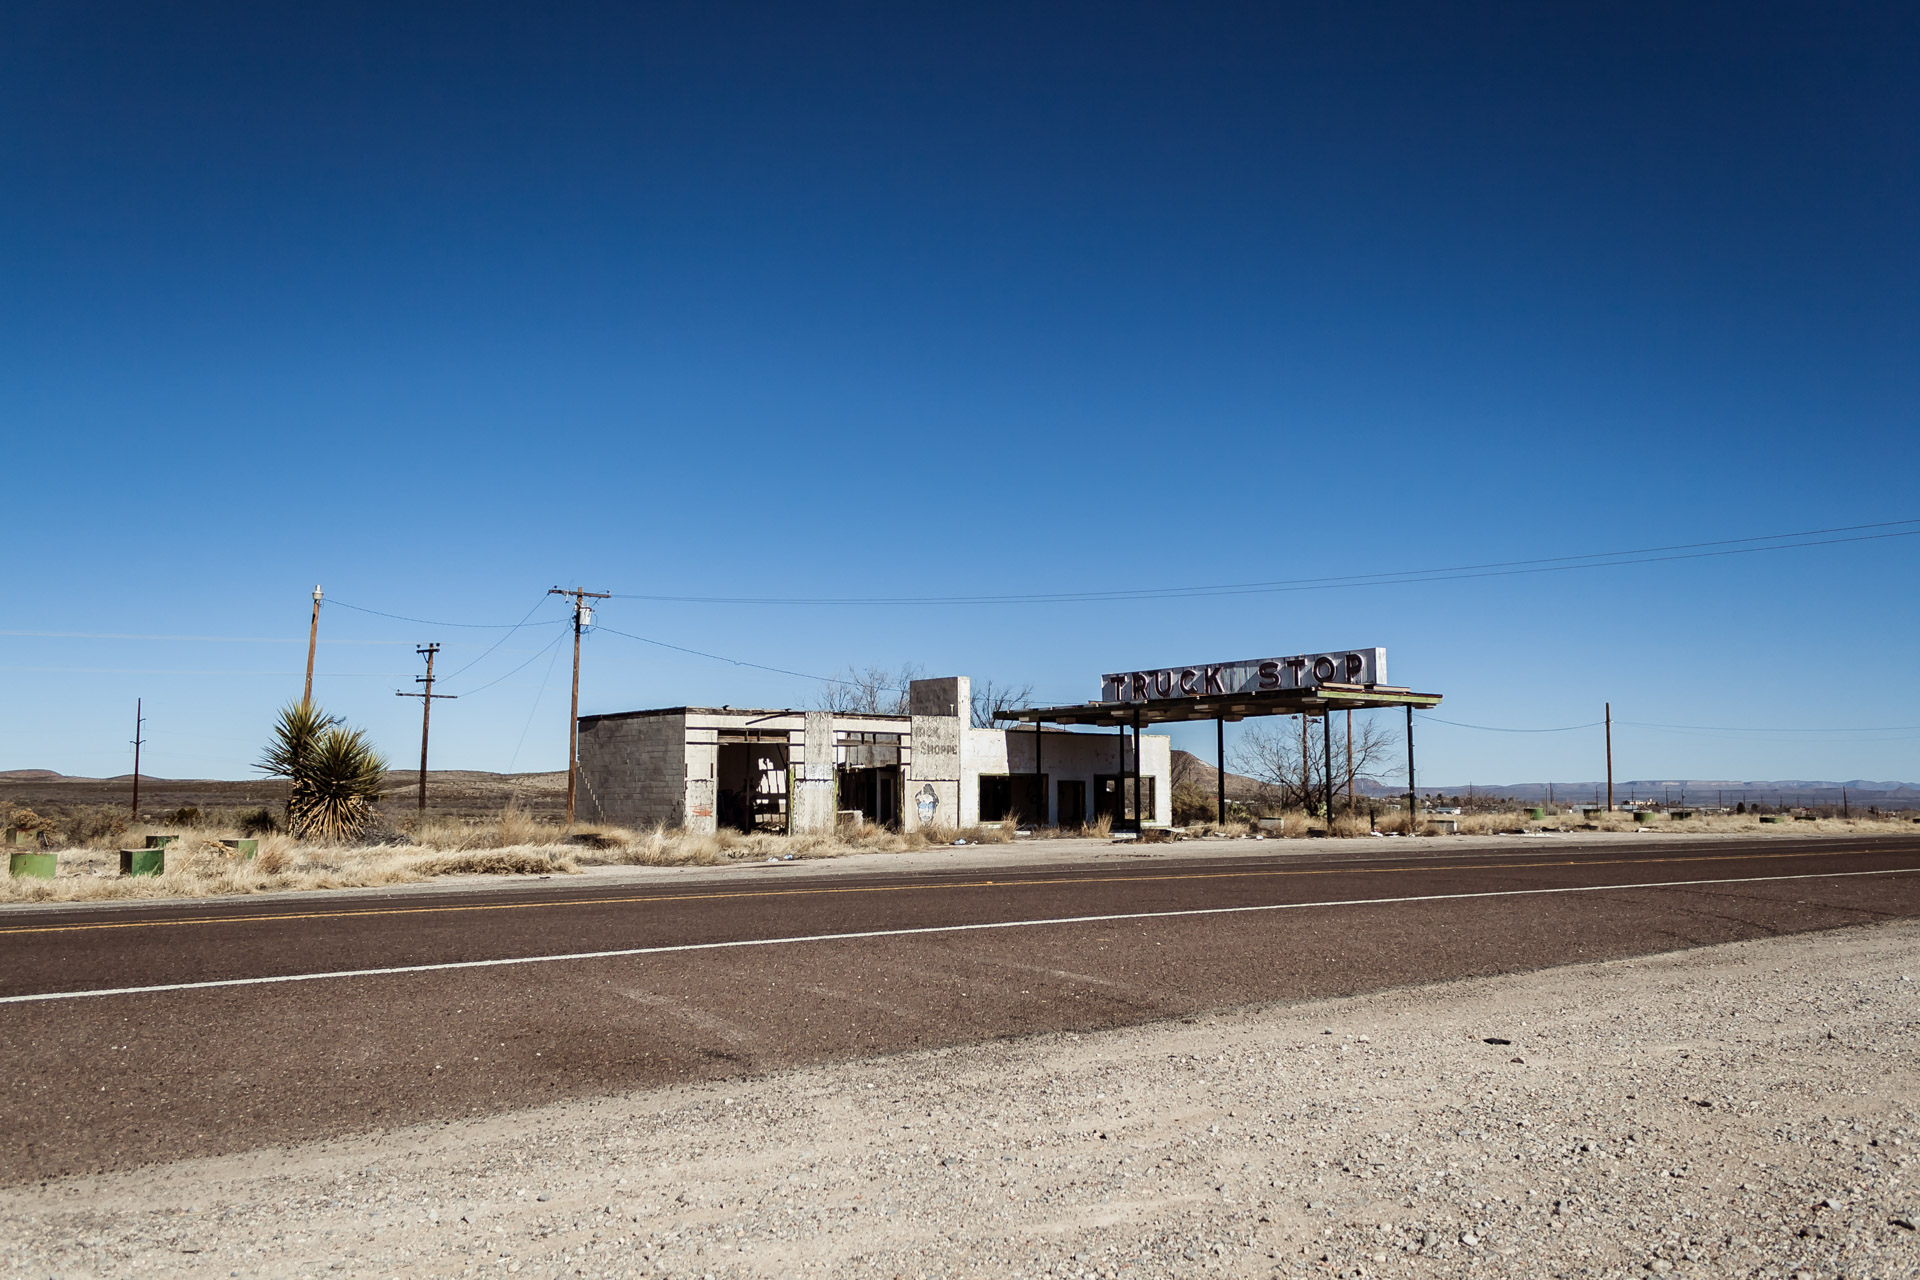 Desert Truck Stop (left far)